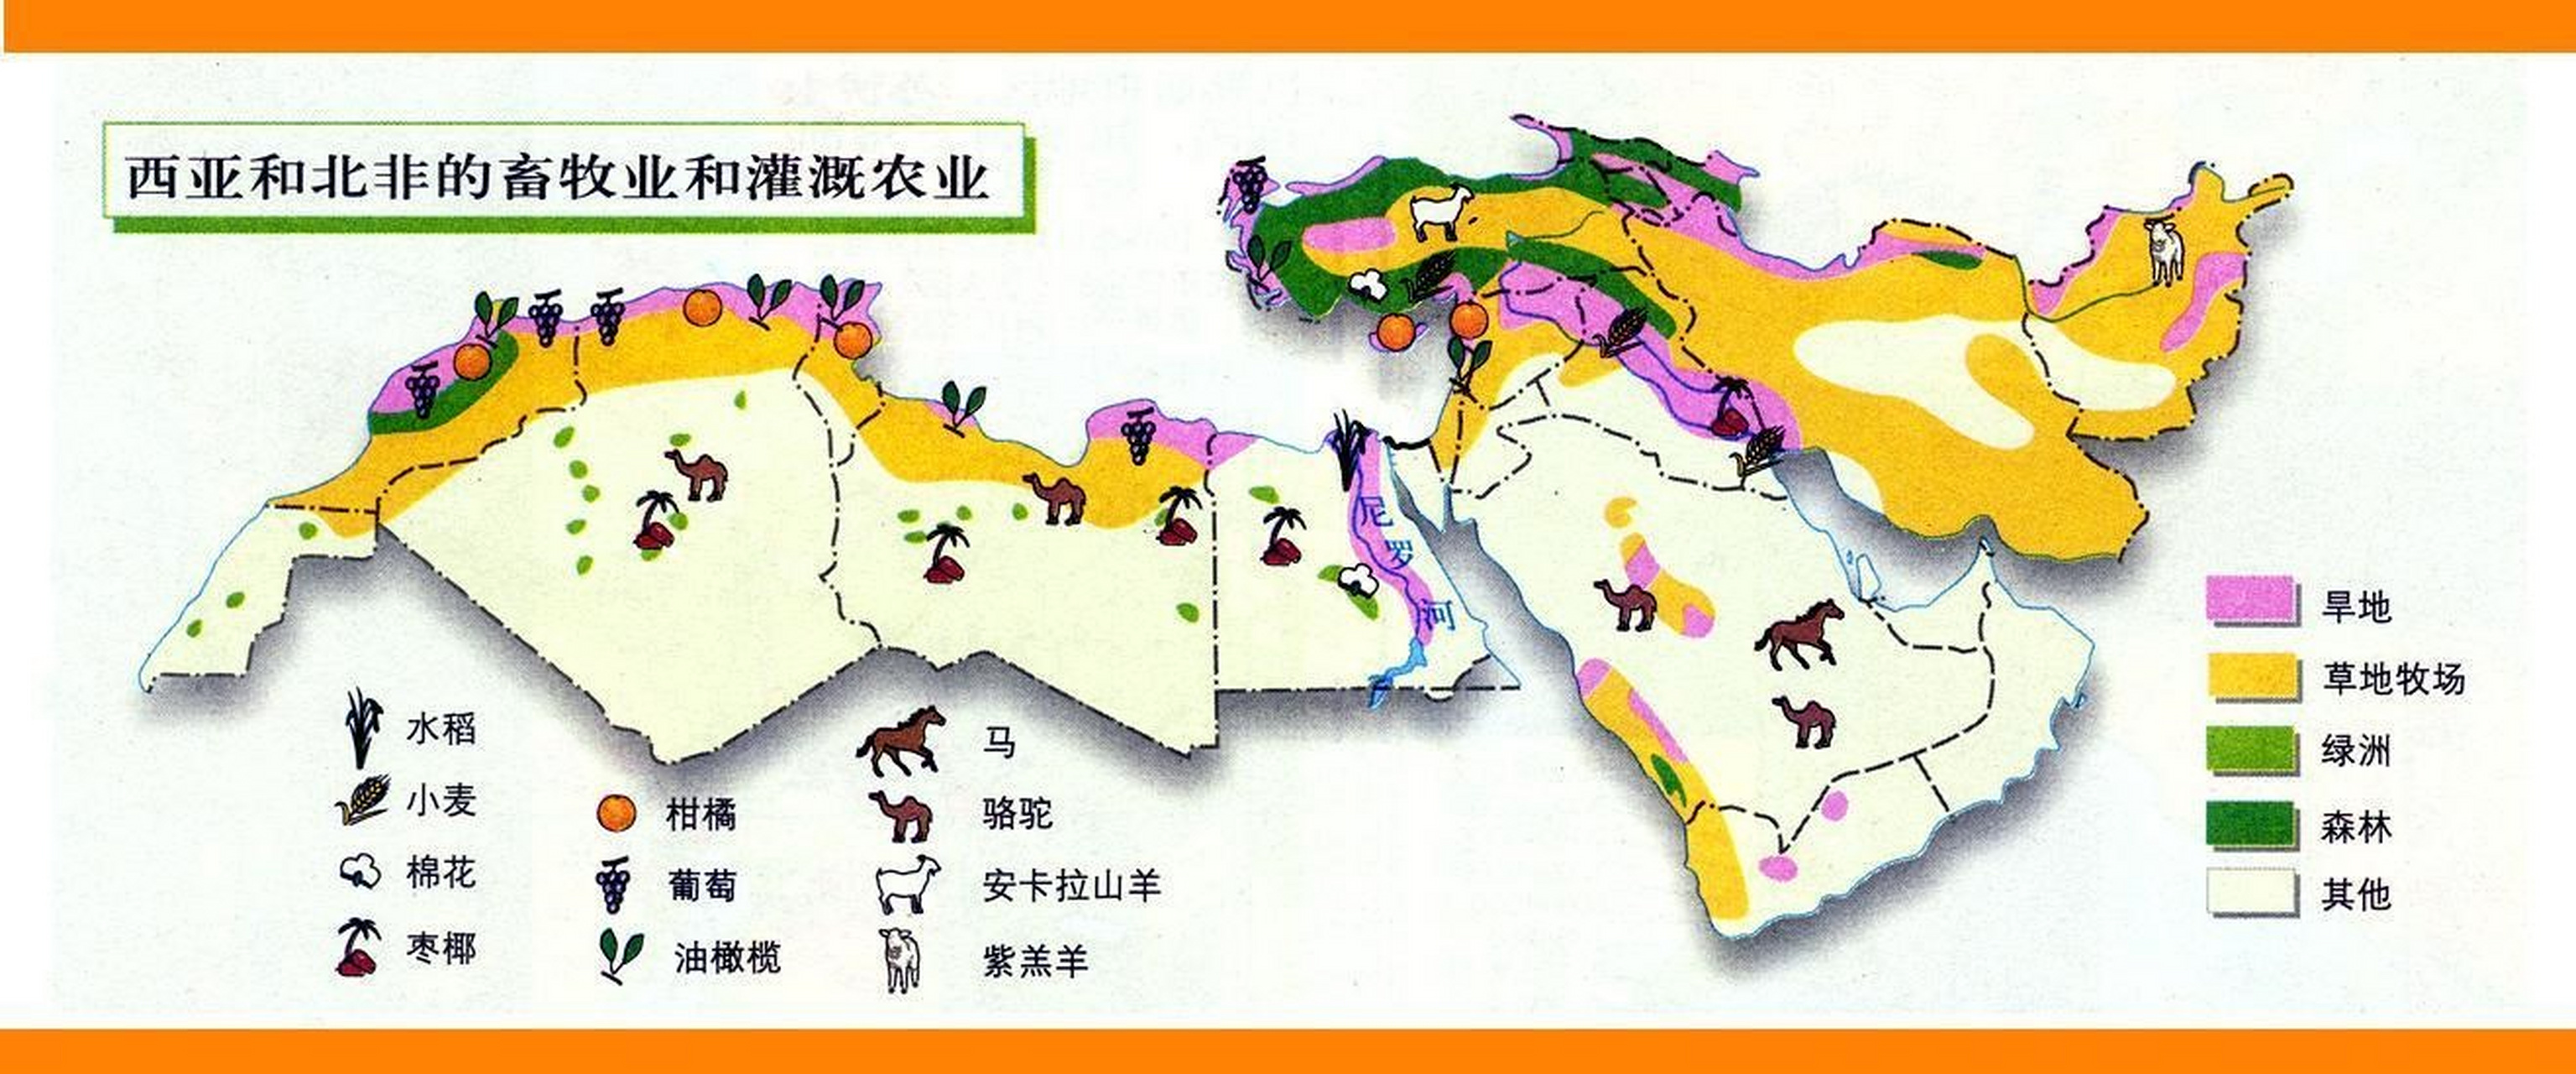 地理 西亚和北非畜牧业和灌溉农业分布图.